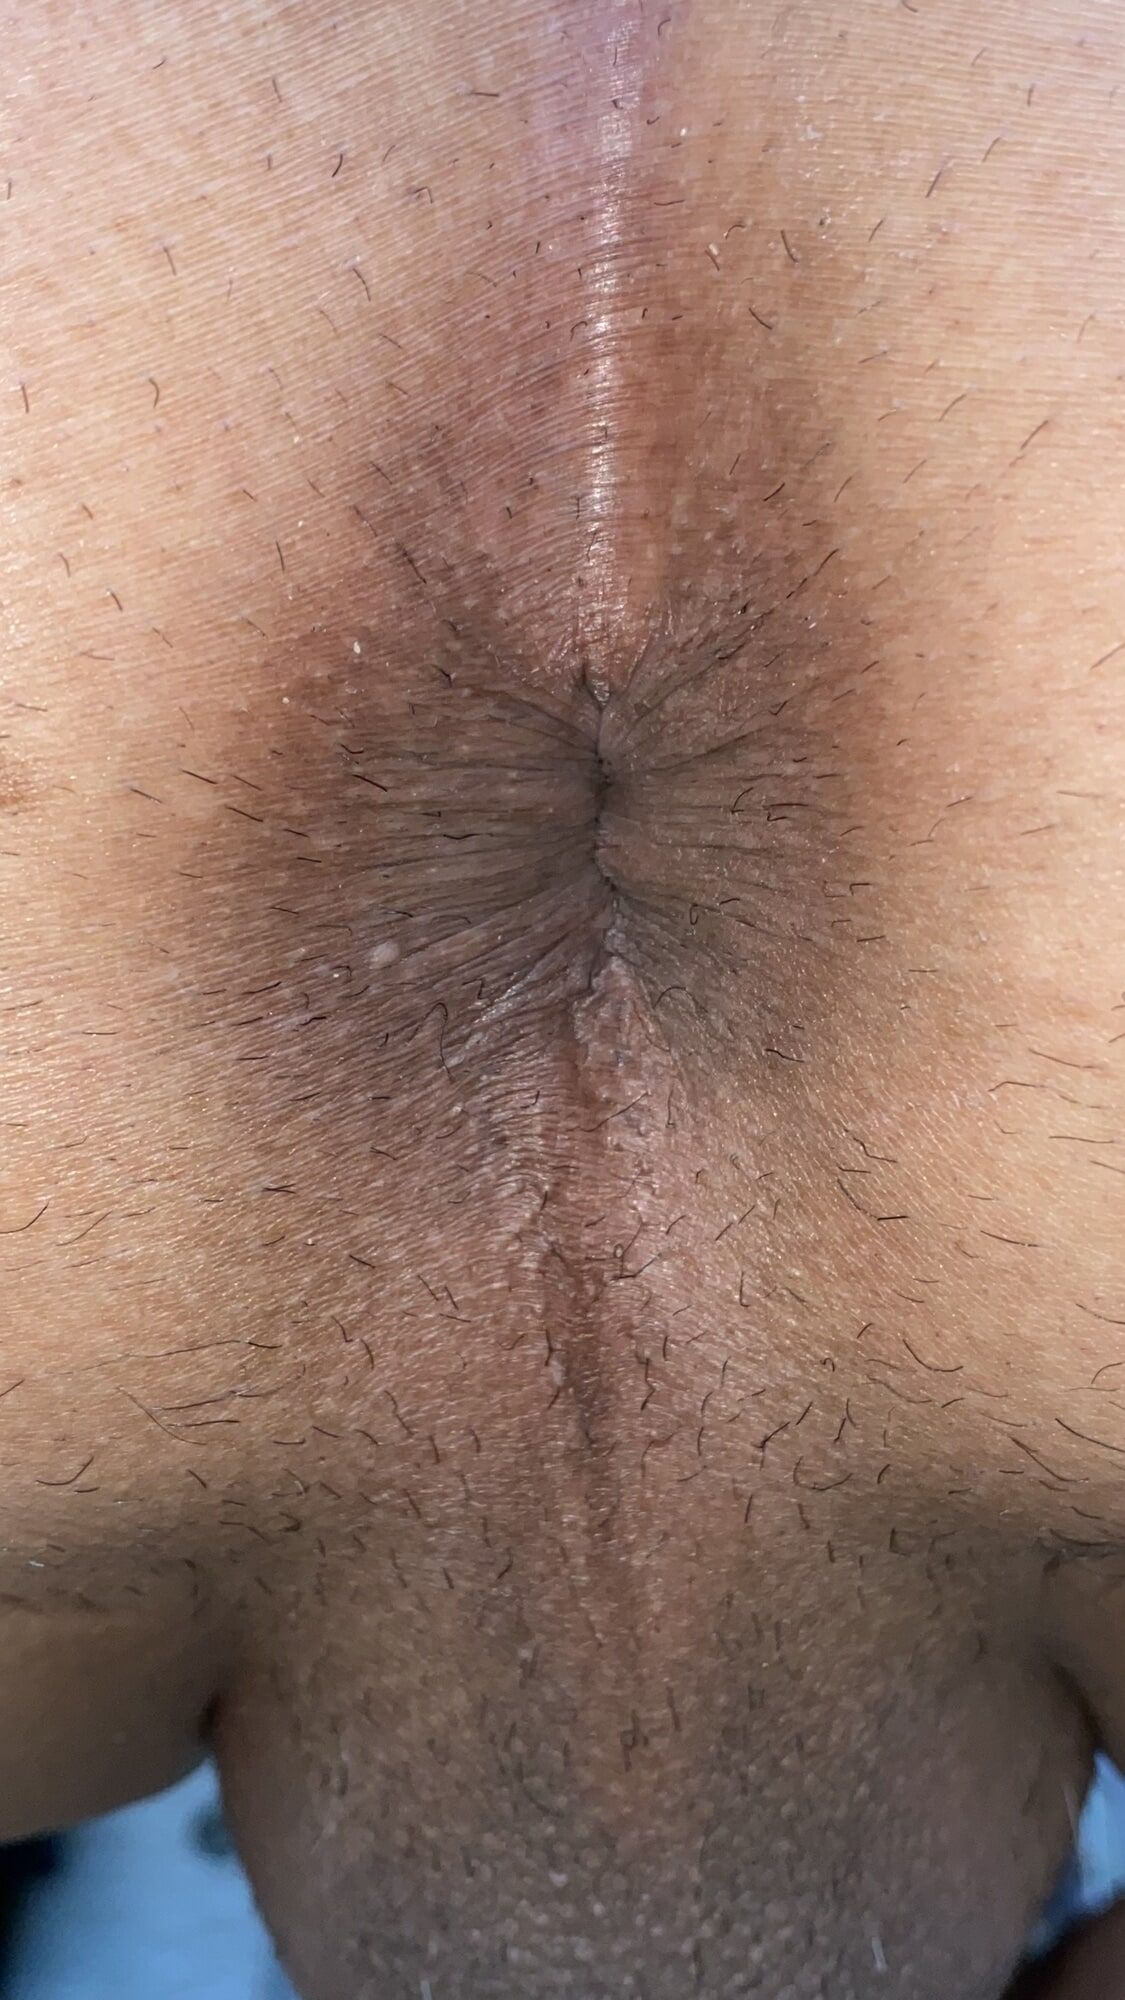 Close-up of a man's anus #2